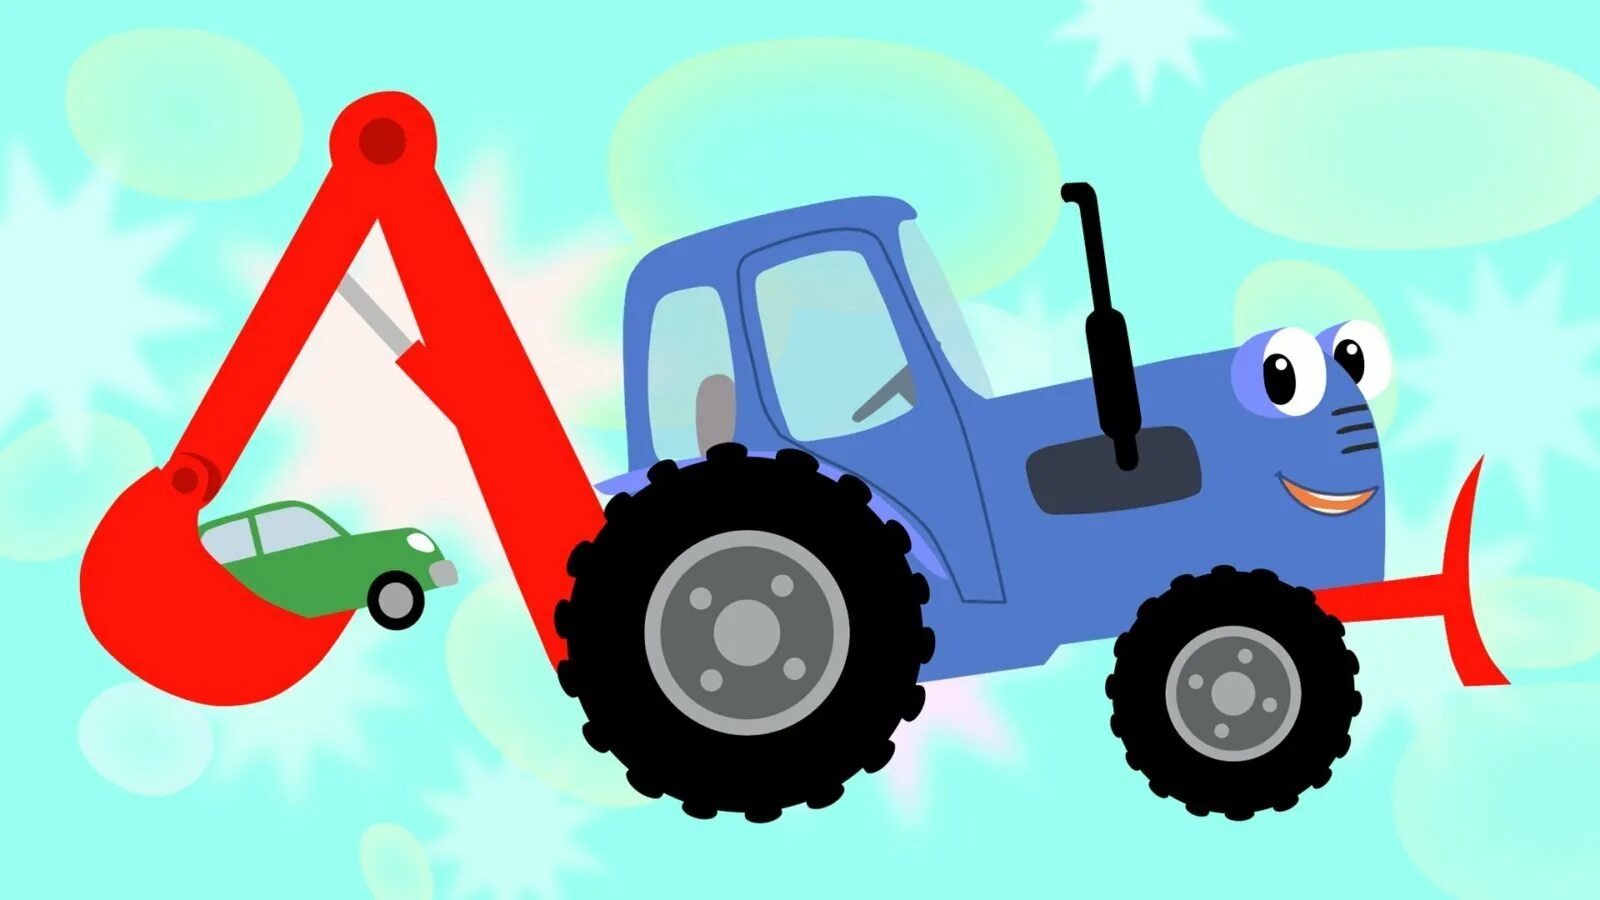 Включи синий трактор есть. Синий трактор тр тр тр. Трактор Гоша трактор Гоша.